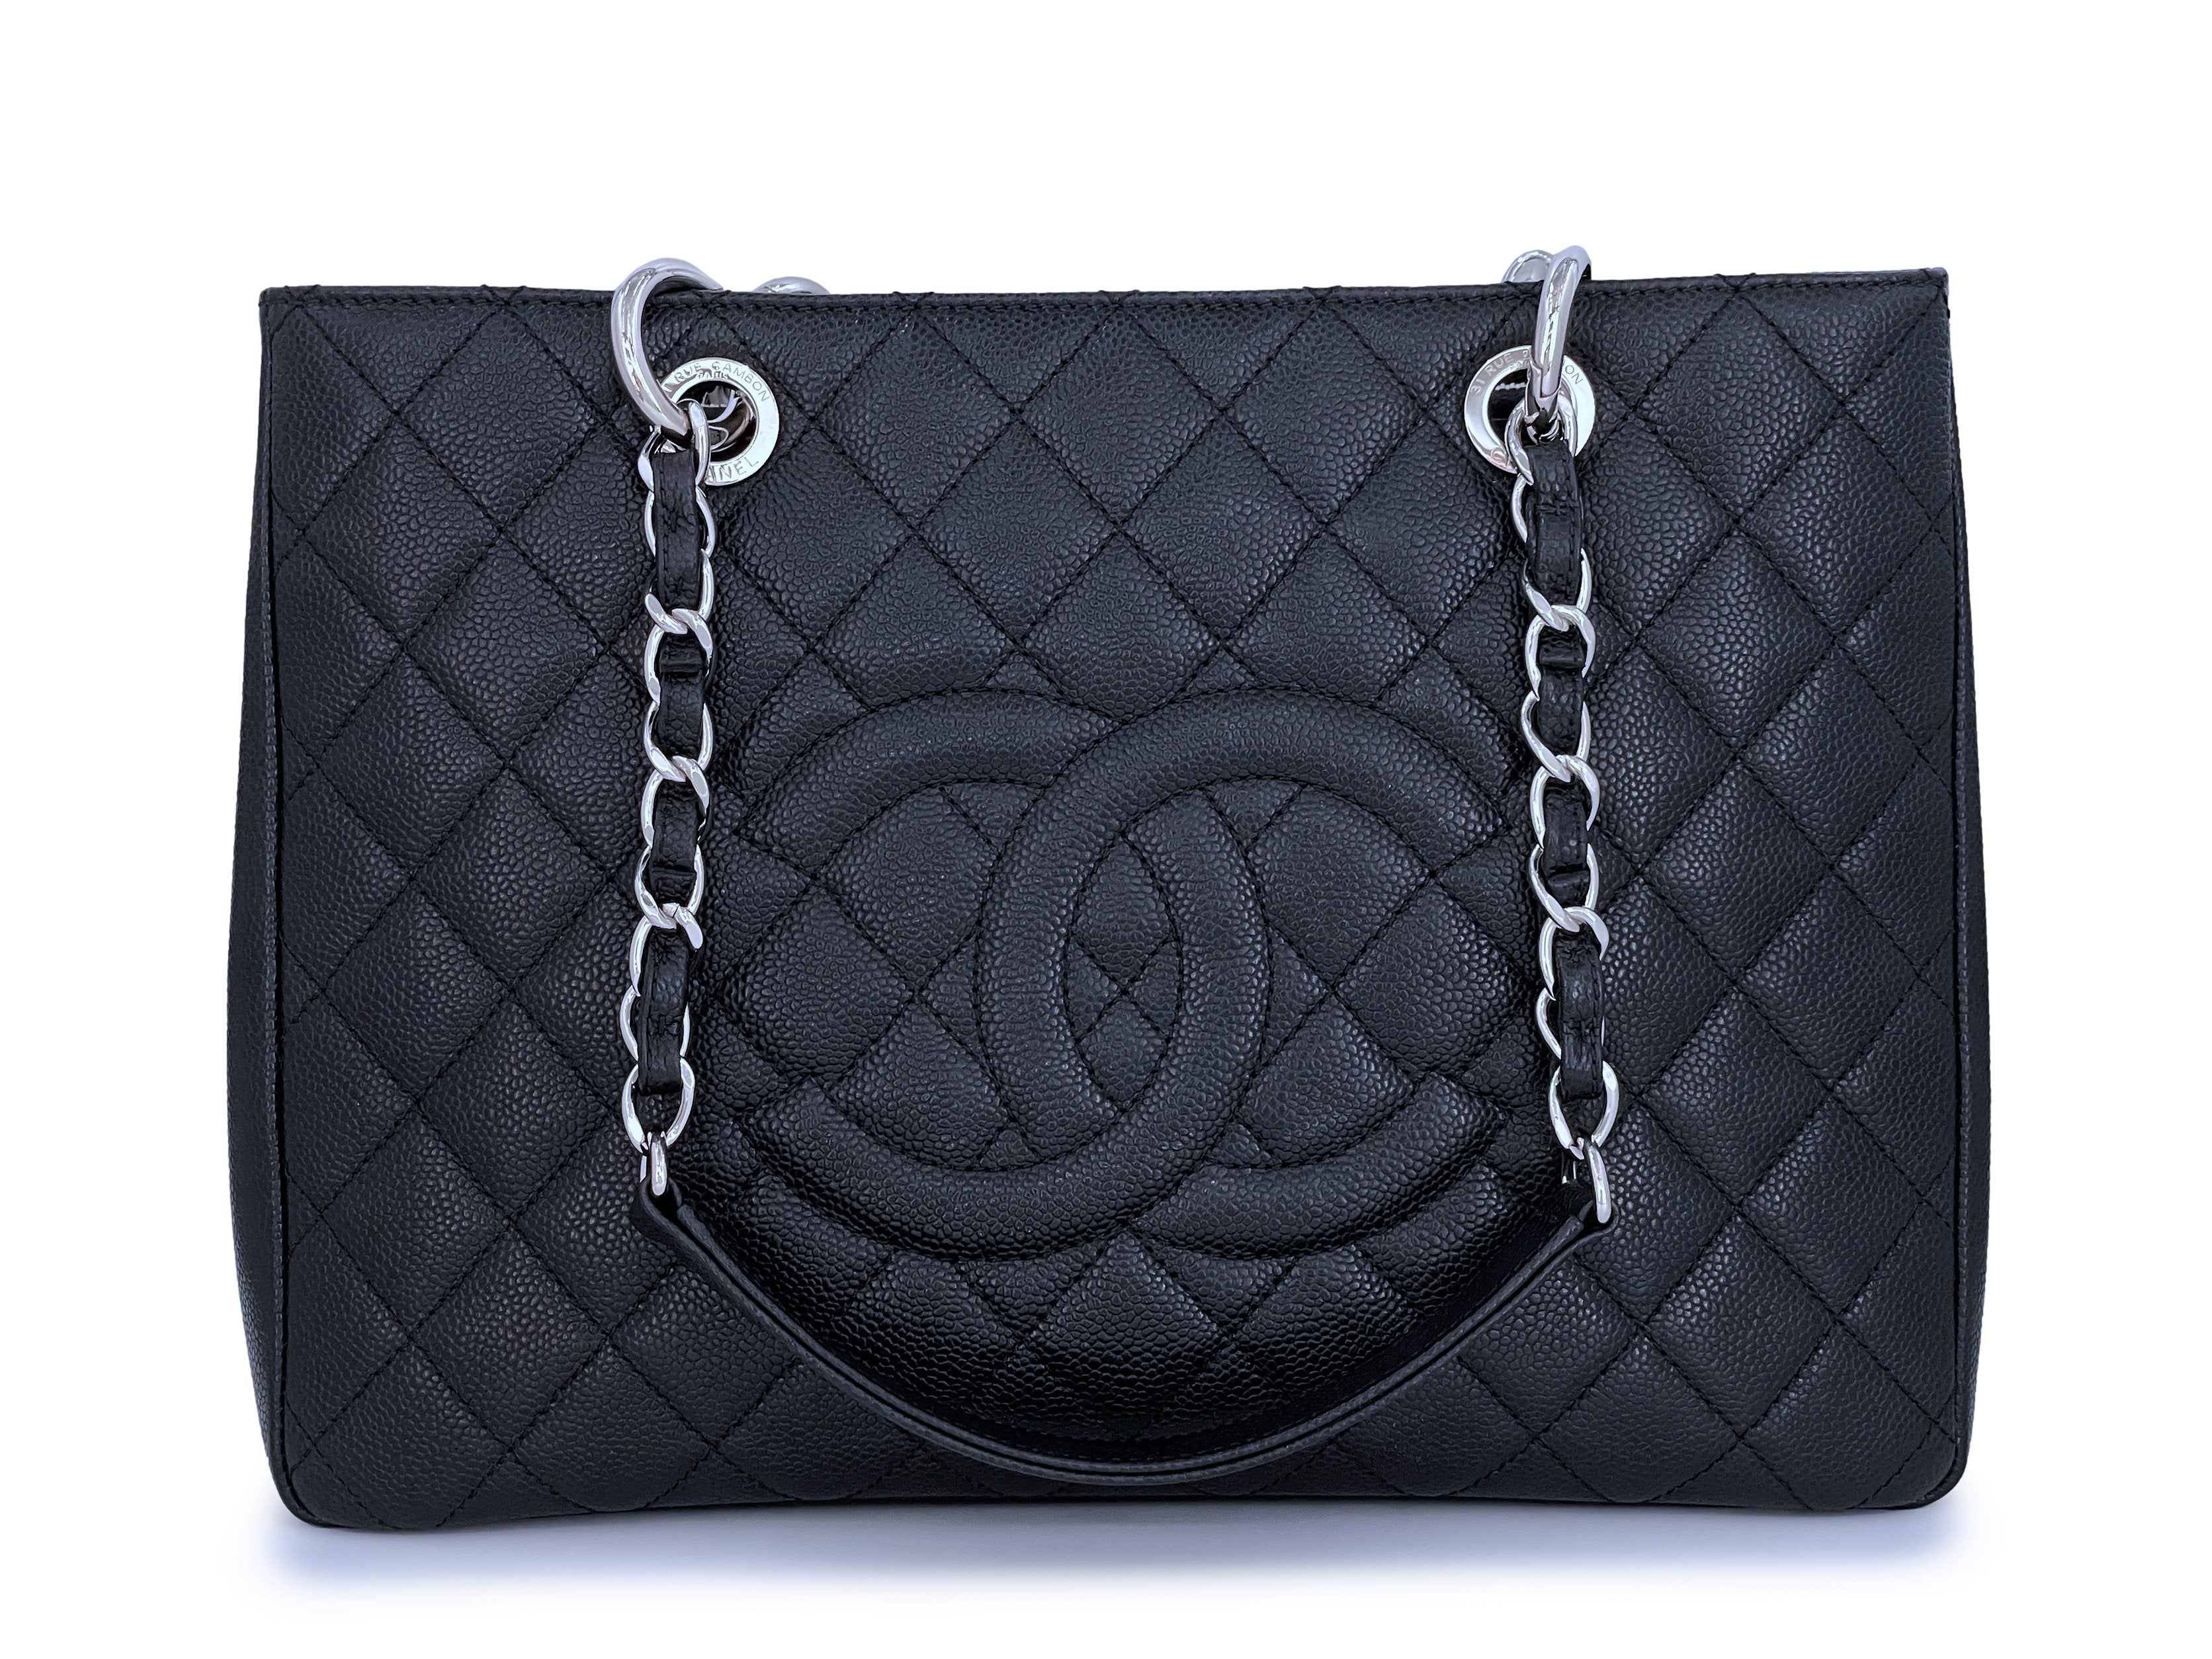 Pristine Chanel Black Caviar Grand Shopper Tote GST Bag SHW – Boutique ...